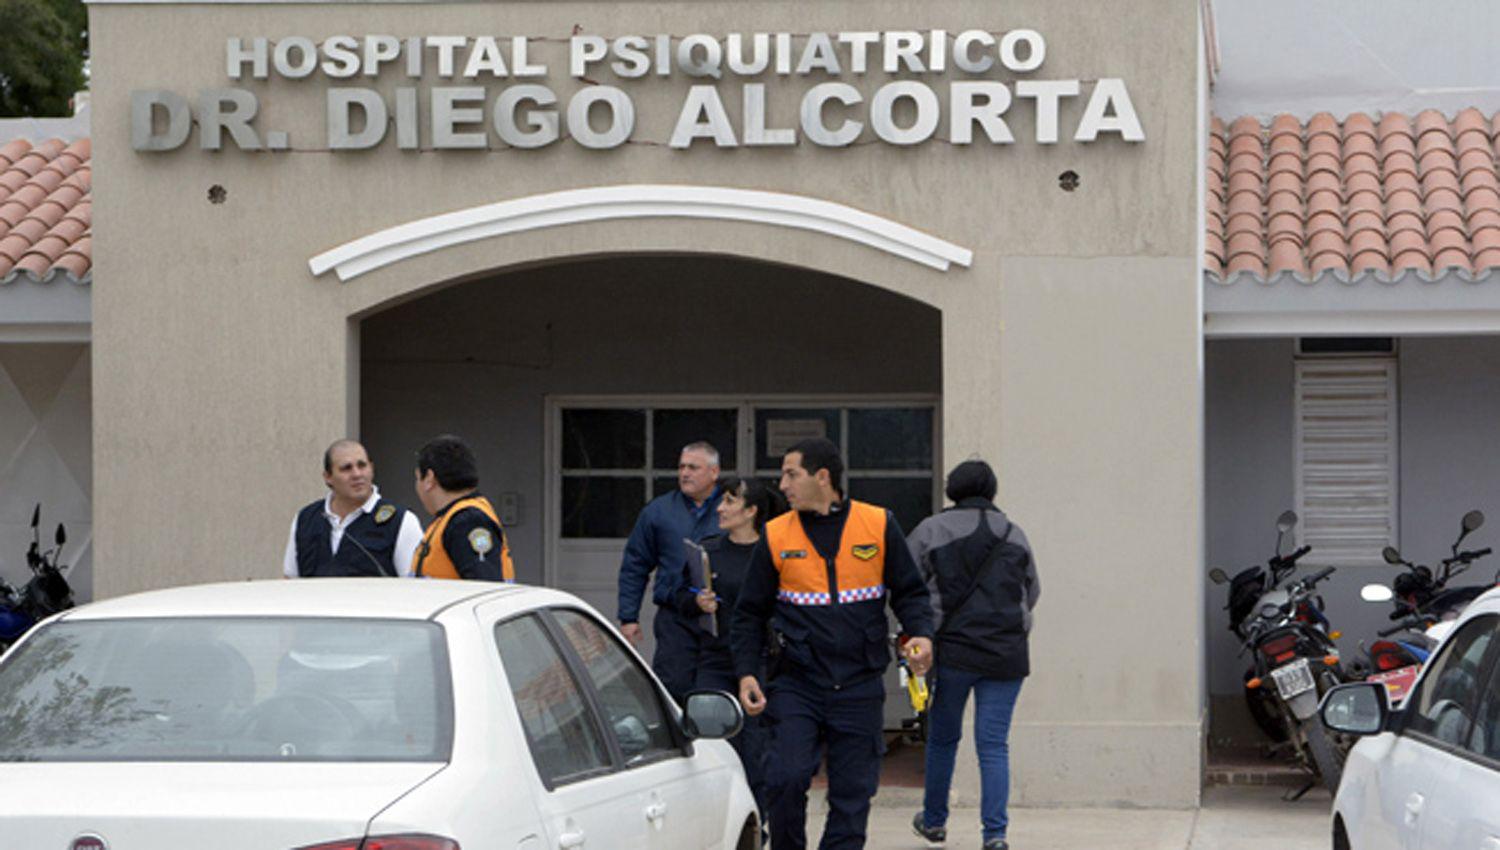 Ladrones robaron bienes del Hospital Dr Diego Alcorta